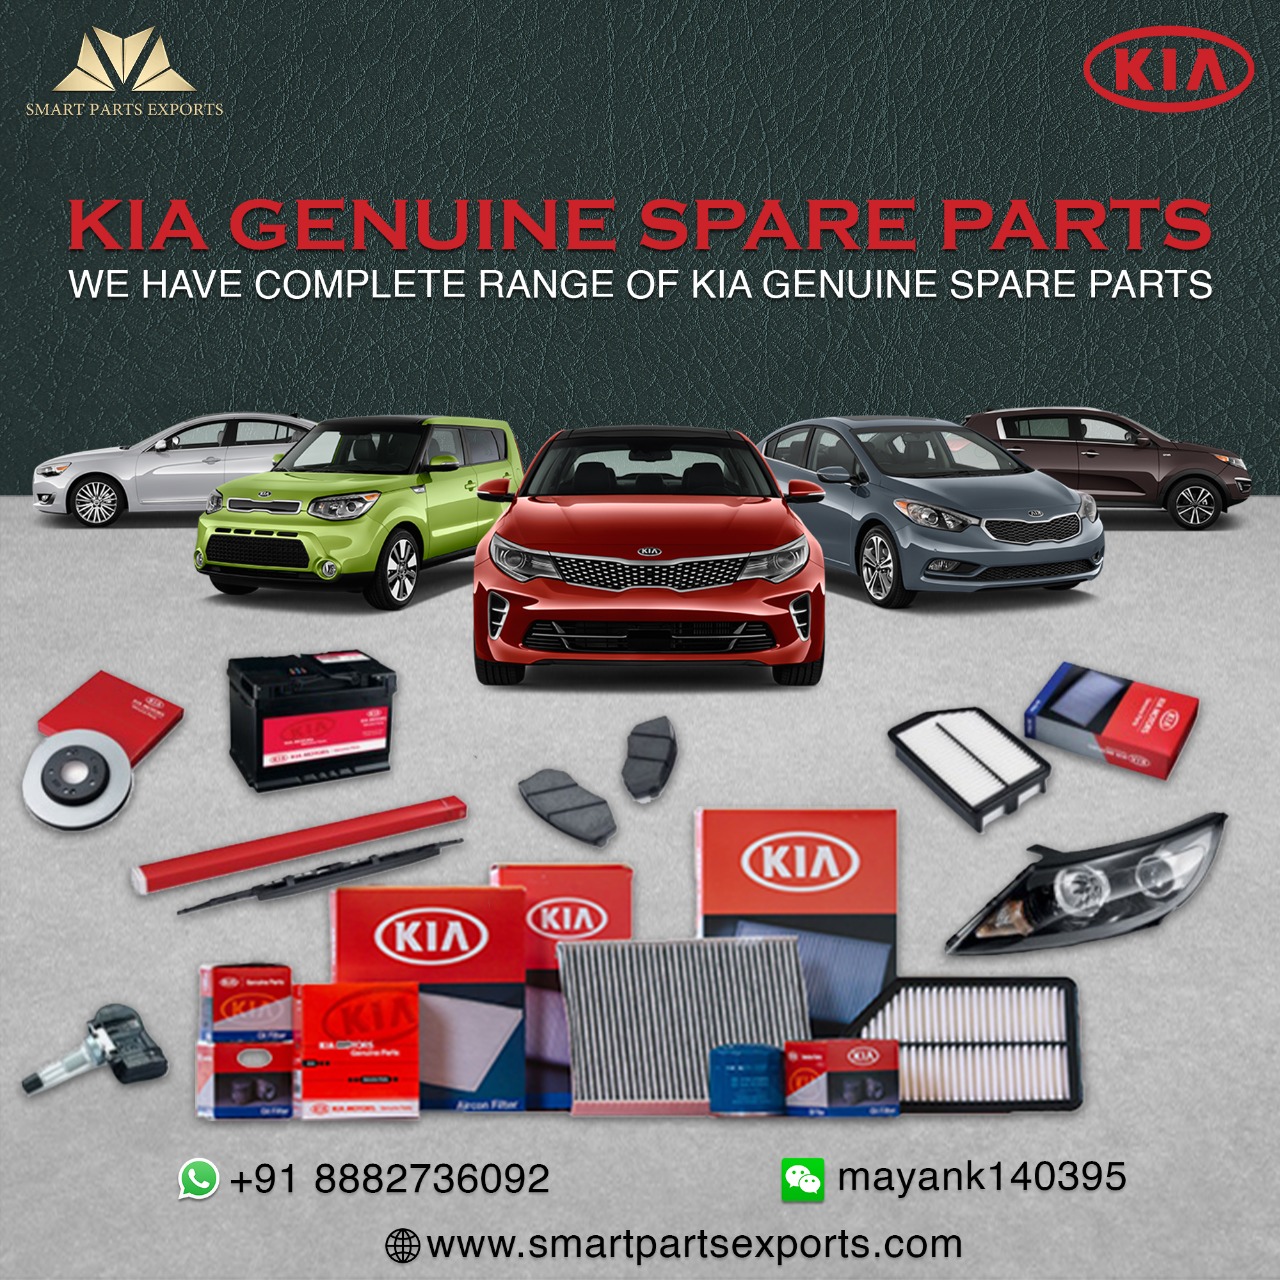 Kia genuine spare parts exporter